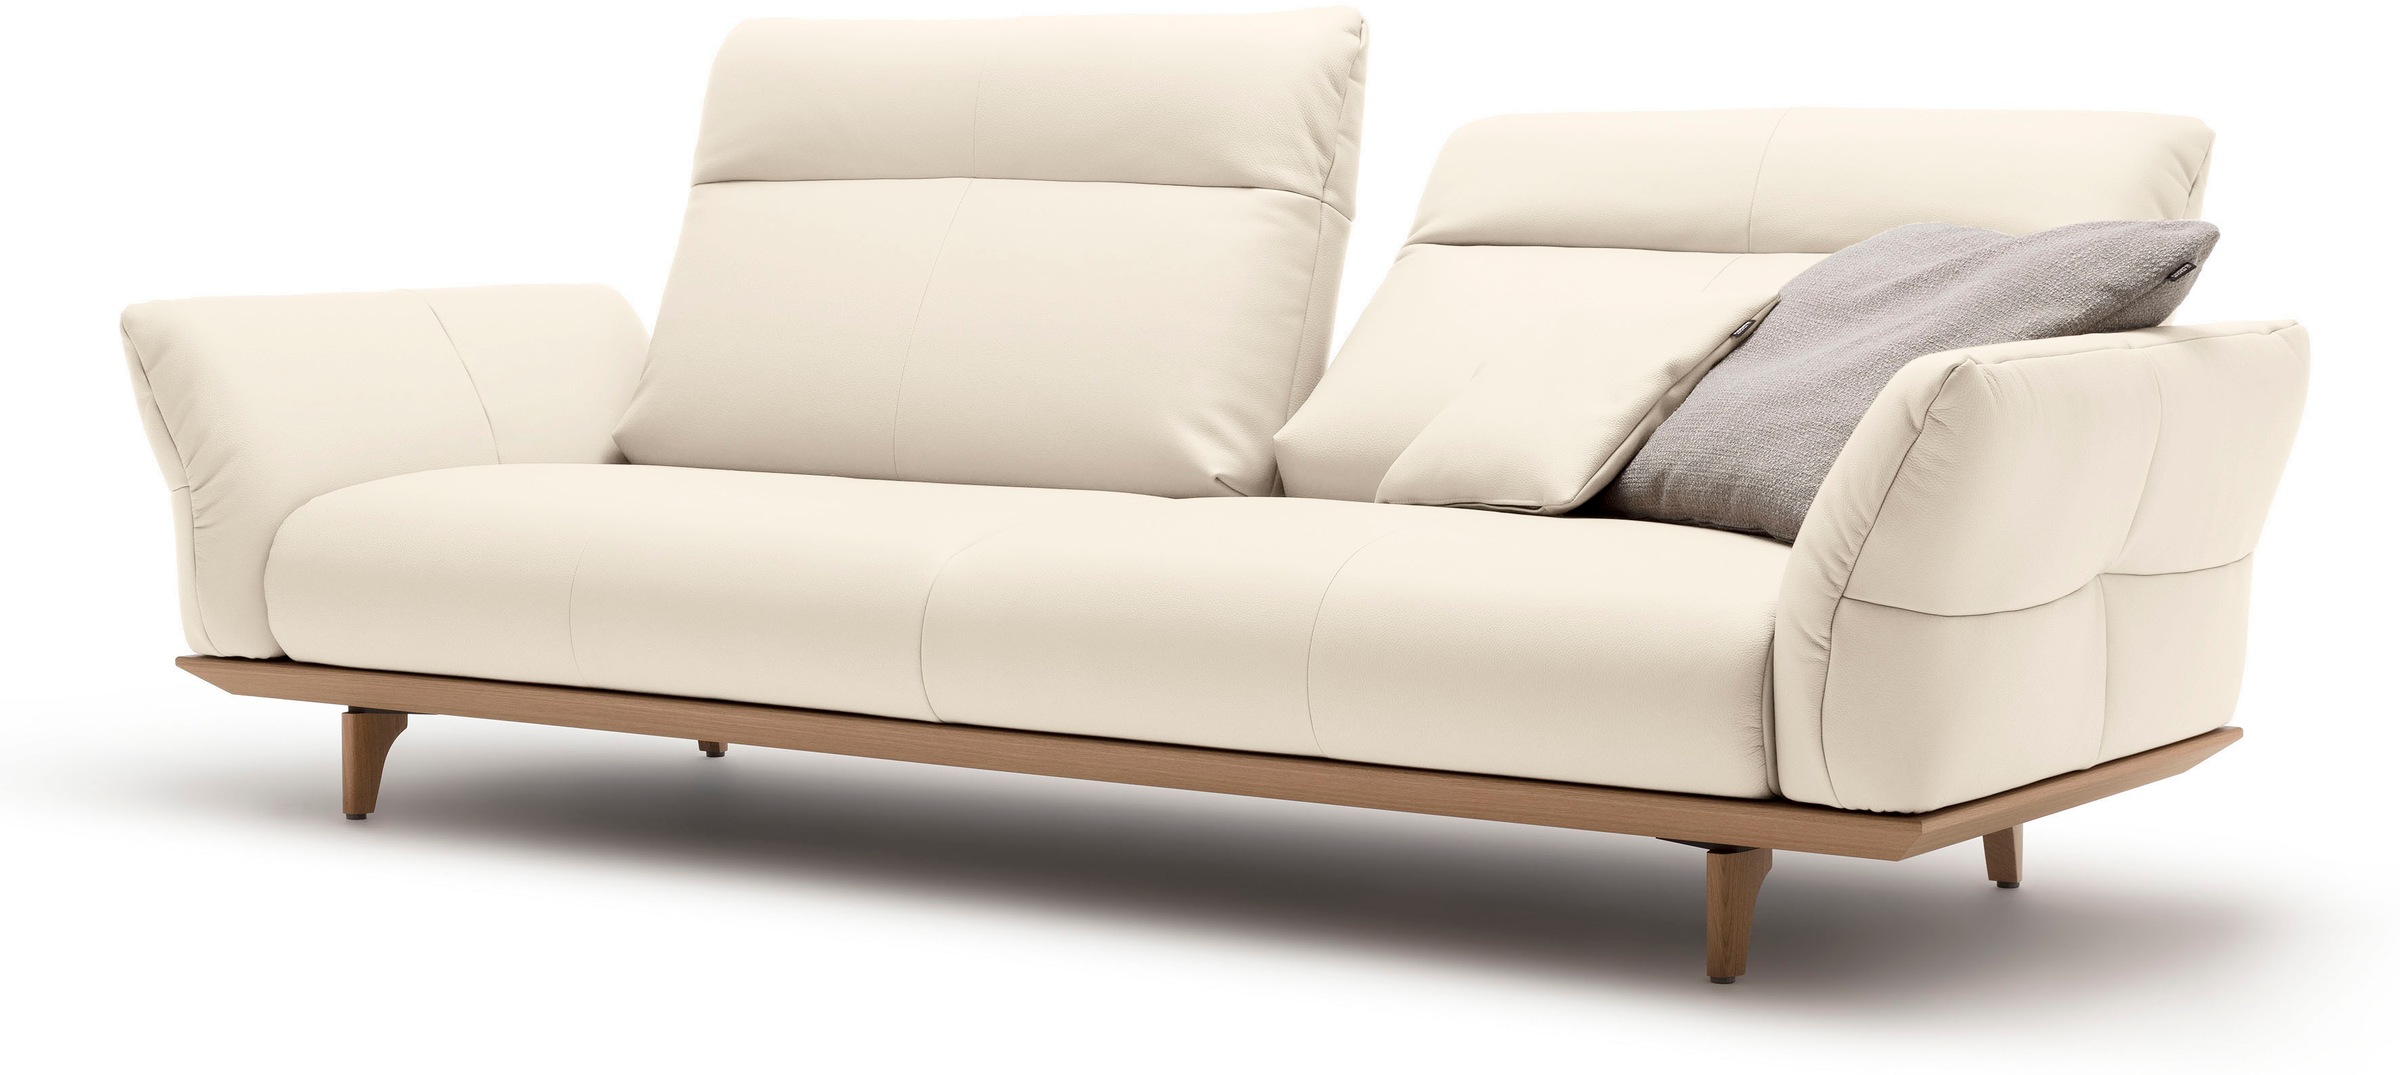 hülsta sofa 3,5-Sitzer »hs.460«, Sockel in Eiche, Füße Eiche natur, Breite 228 cm